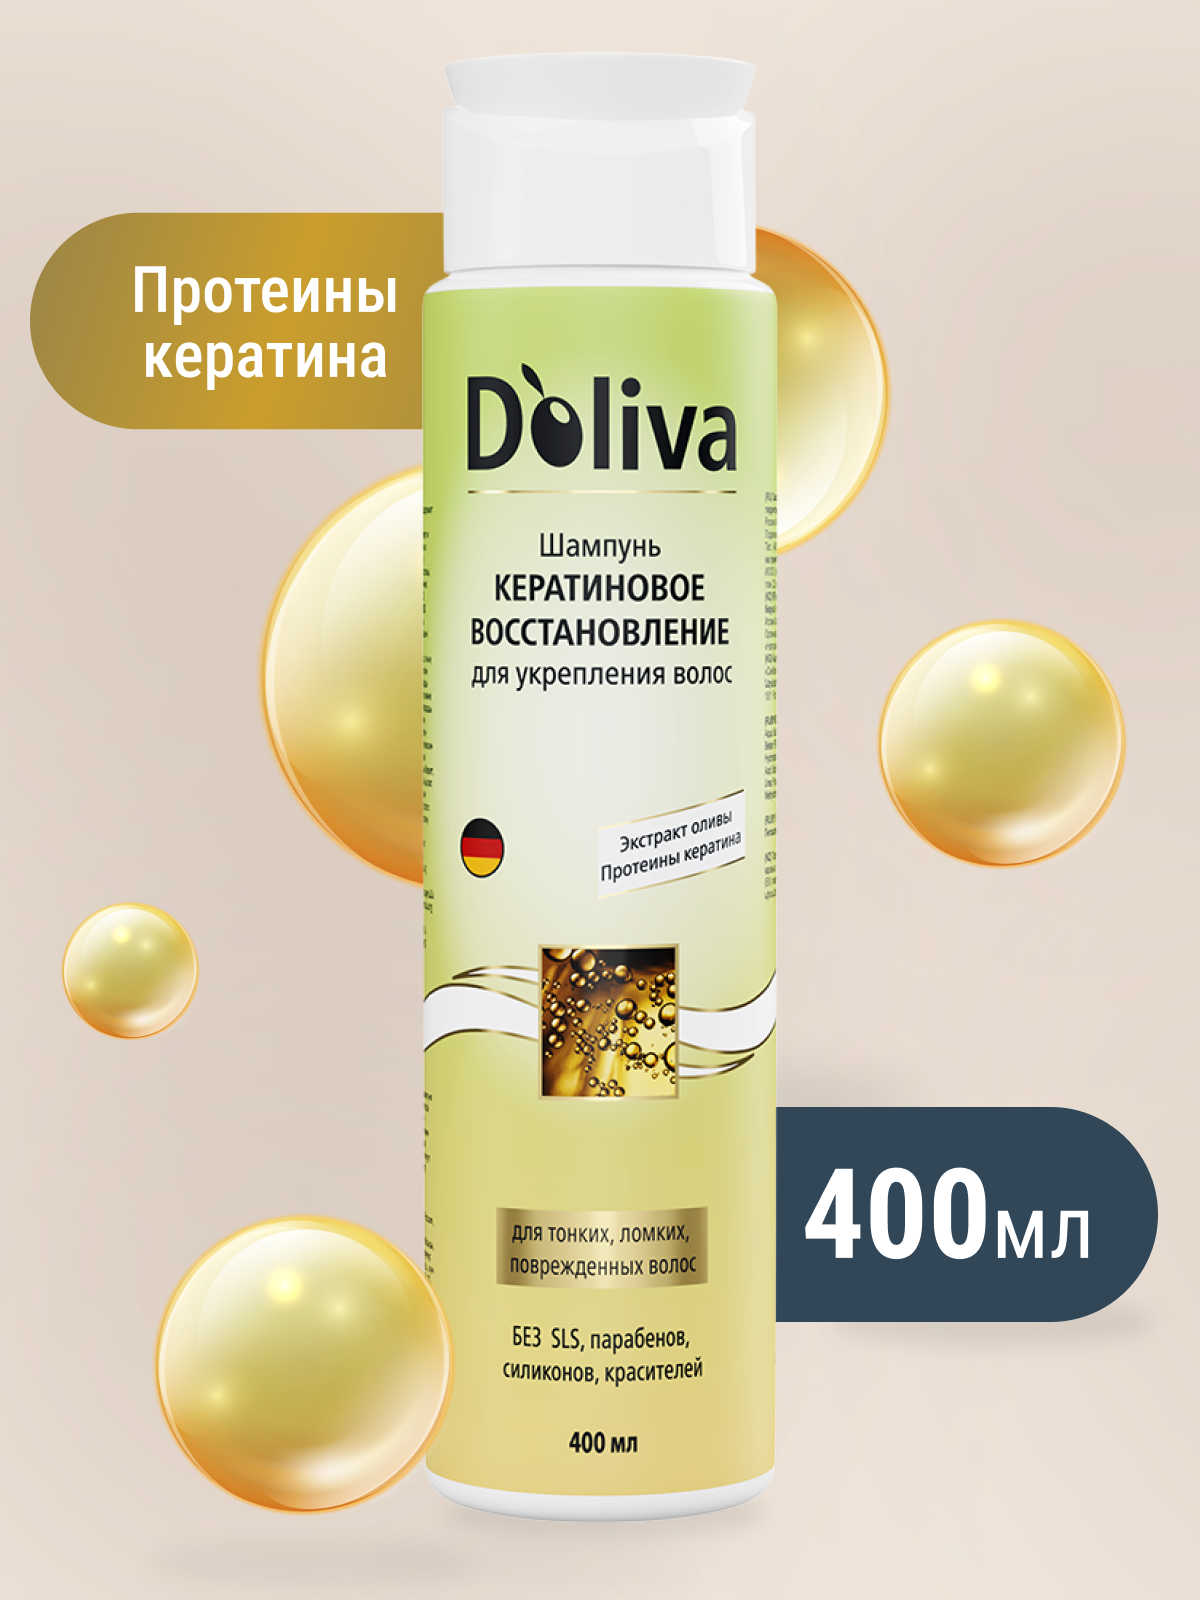 Doliva шампунь женский Кератиновое восстановление для укрепления ломких, поврежденных и секущихся волос, 400 мл